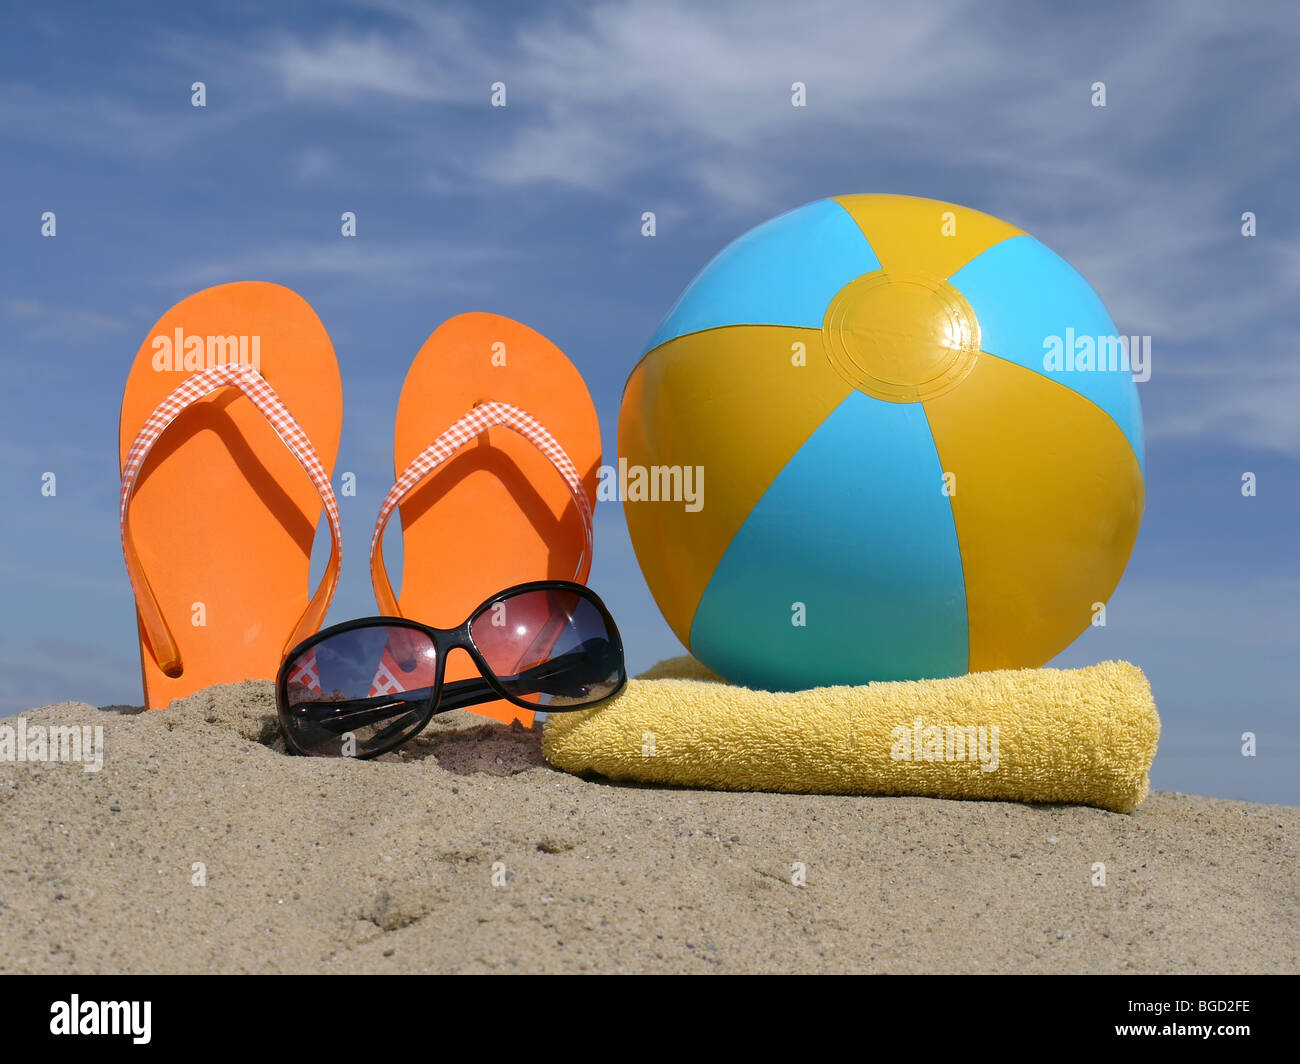 Les tongs Orange conduit à la verticale dans le sable de plage, lunettes, gonflé de ballons de plage et serviette de bain jaune plus de ciel bleu Banque D'Images